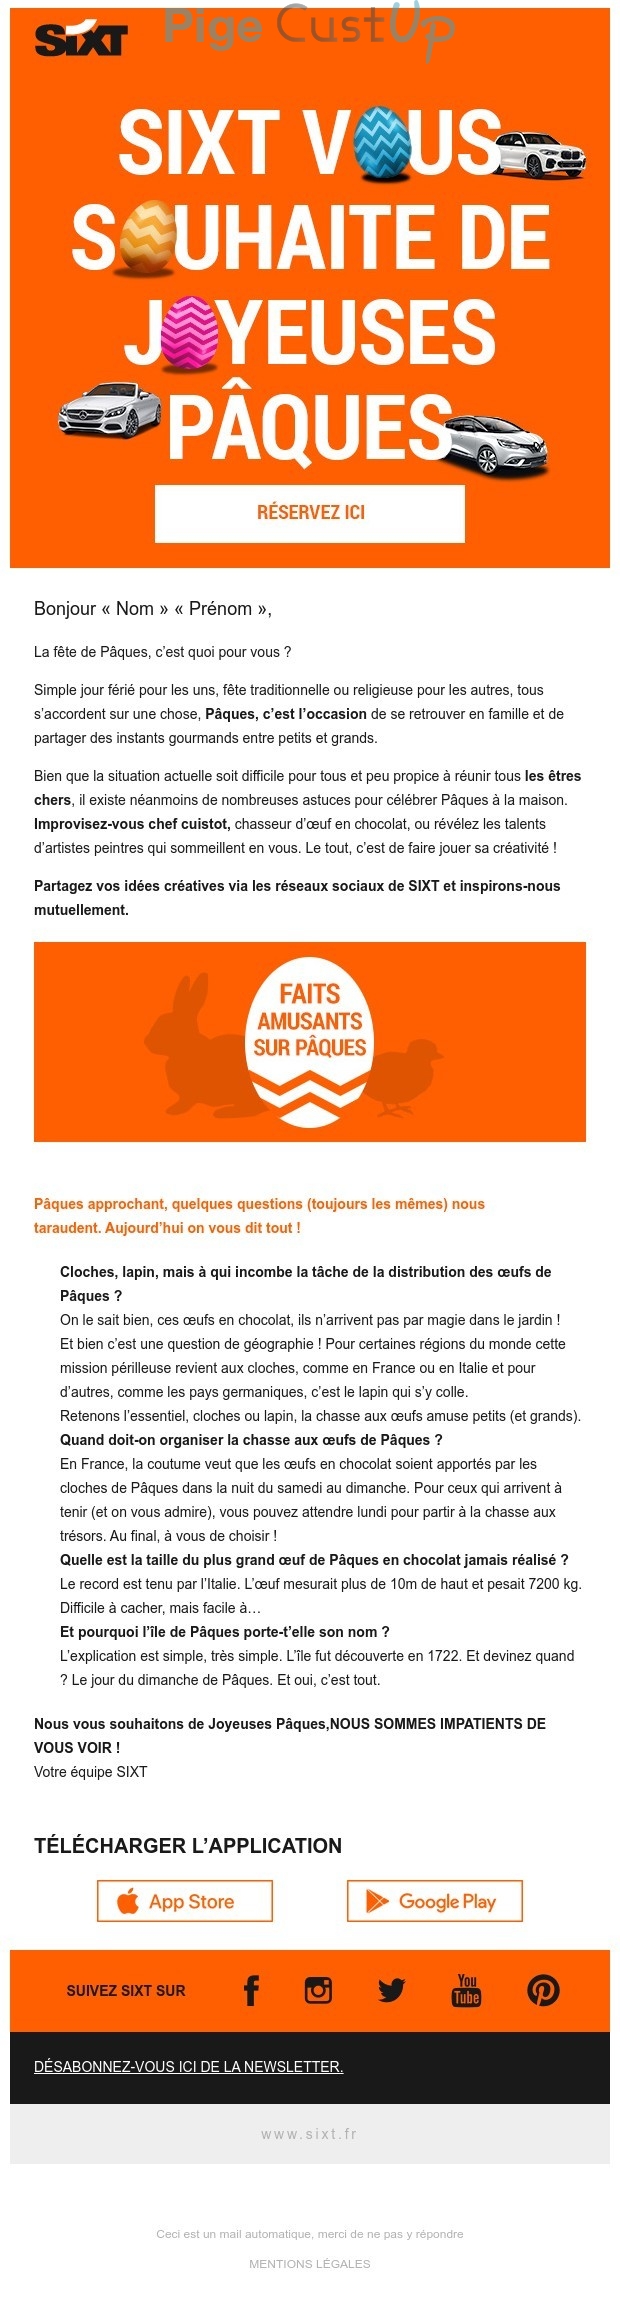 Exemple de Type de media  e-mailing - Sixt - Marketing relationnel - Calendaire (Noël, St valentin, Vœux, …) - Engagement Réseaux sociaux - Newsletter